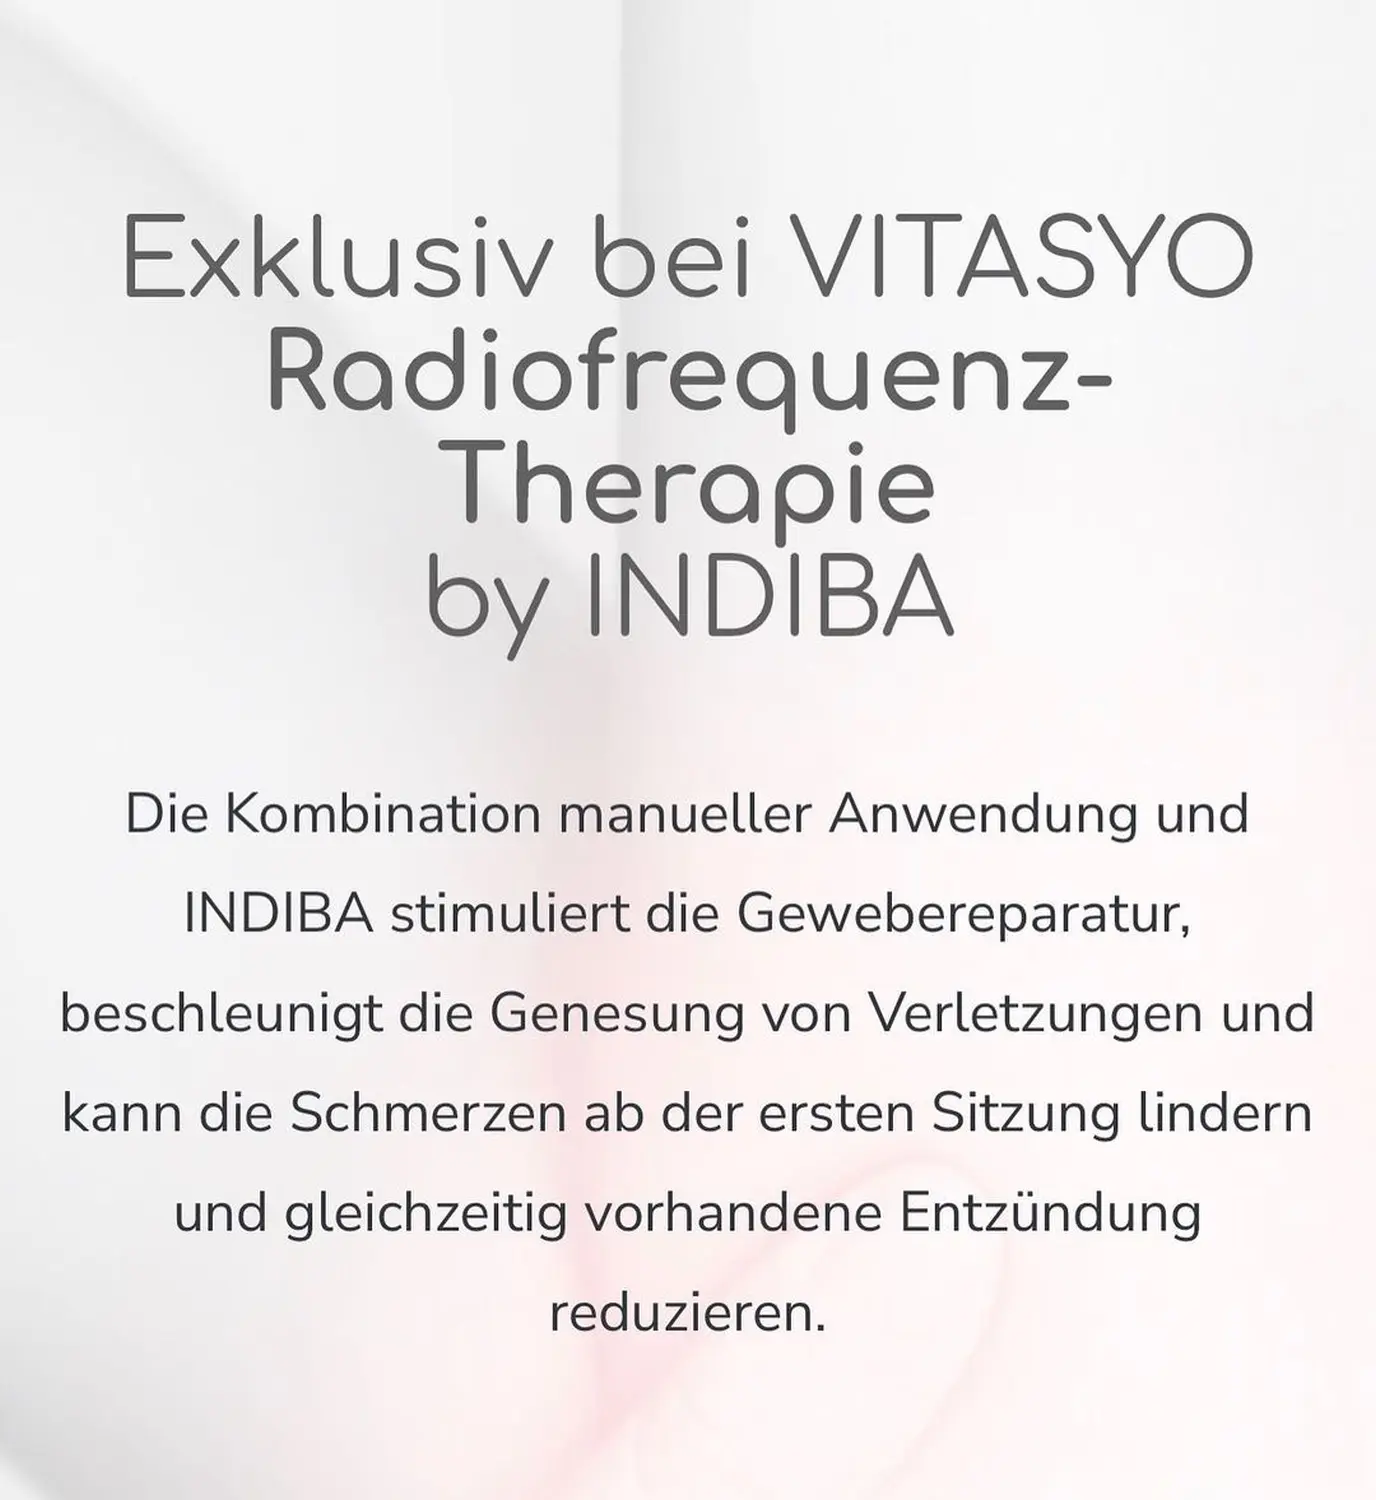 Indiba Radiowellen frequenz therapie flyer